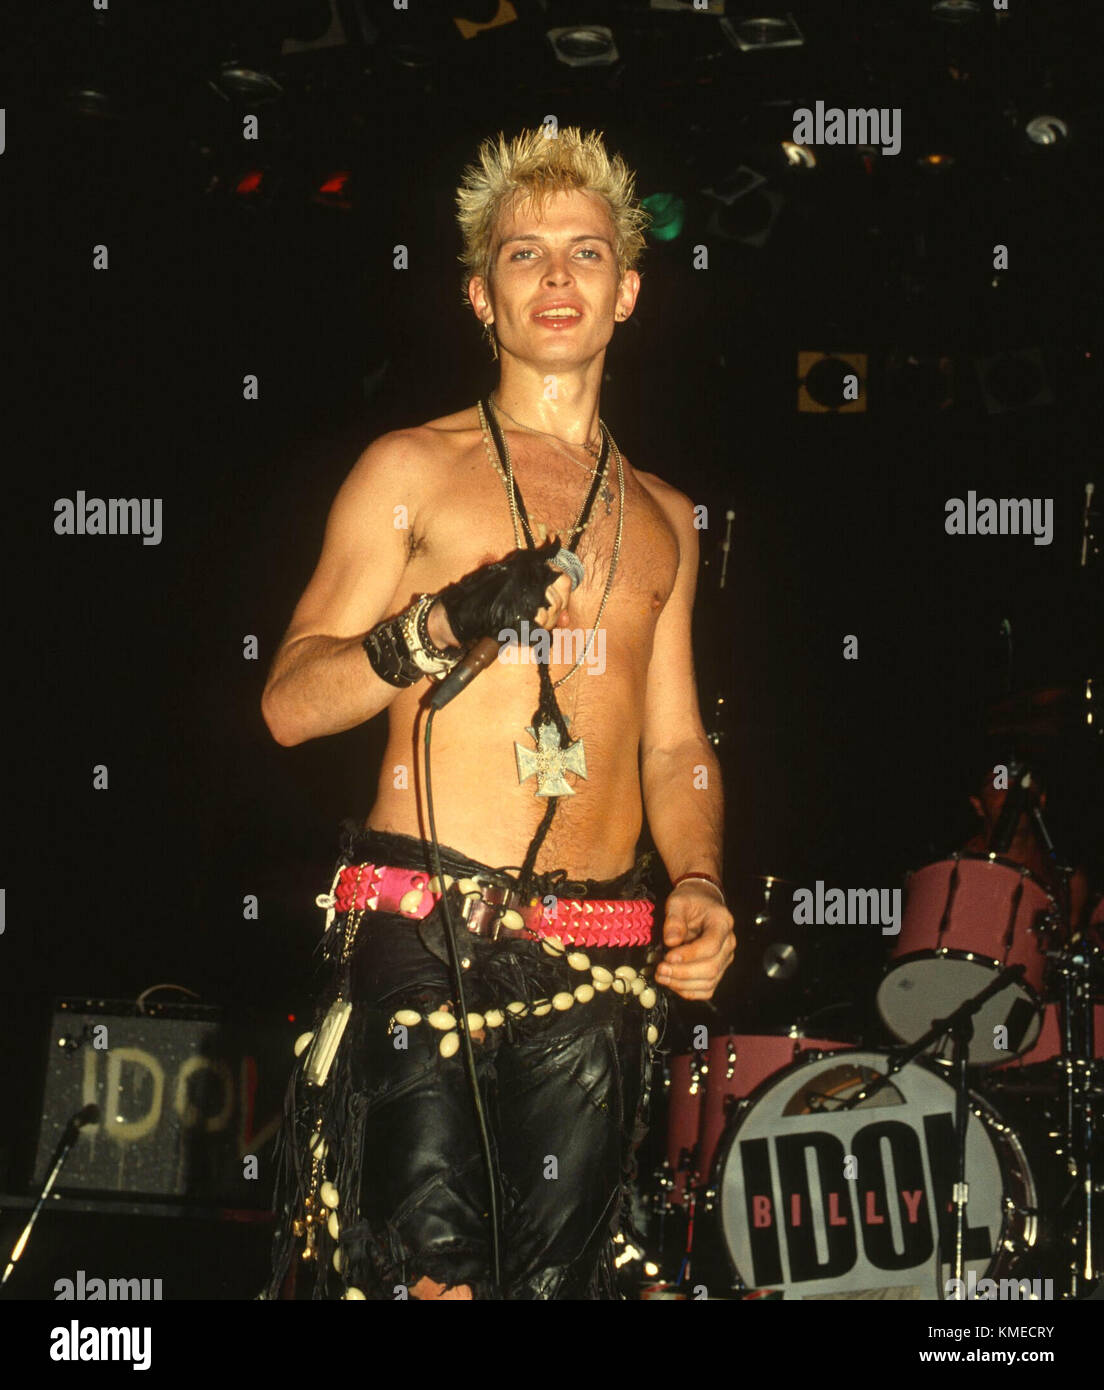 Musicien/chanteur Billy Idol se produit en concert à l'Hollywood Palladium  le 17 mars 1984 à Los Angeles, Californie. Photo de Barry King/Alamy Photo  Stock - Alamy